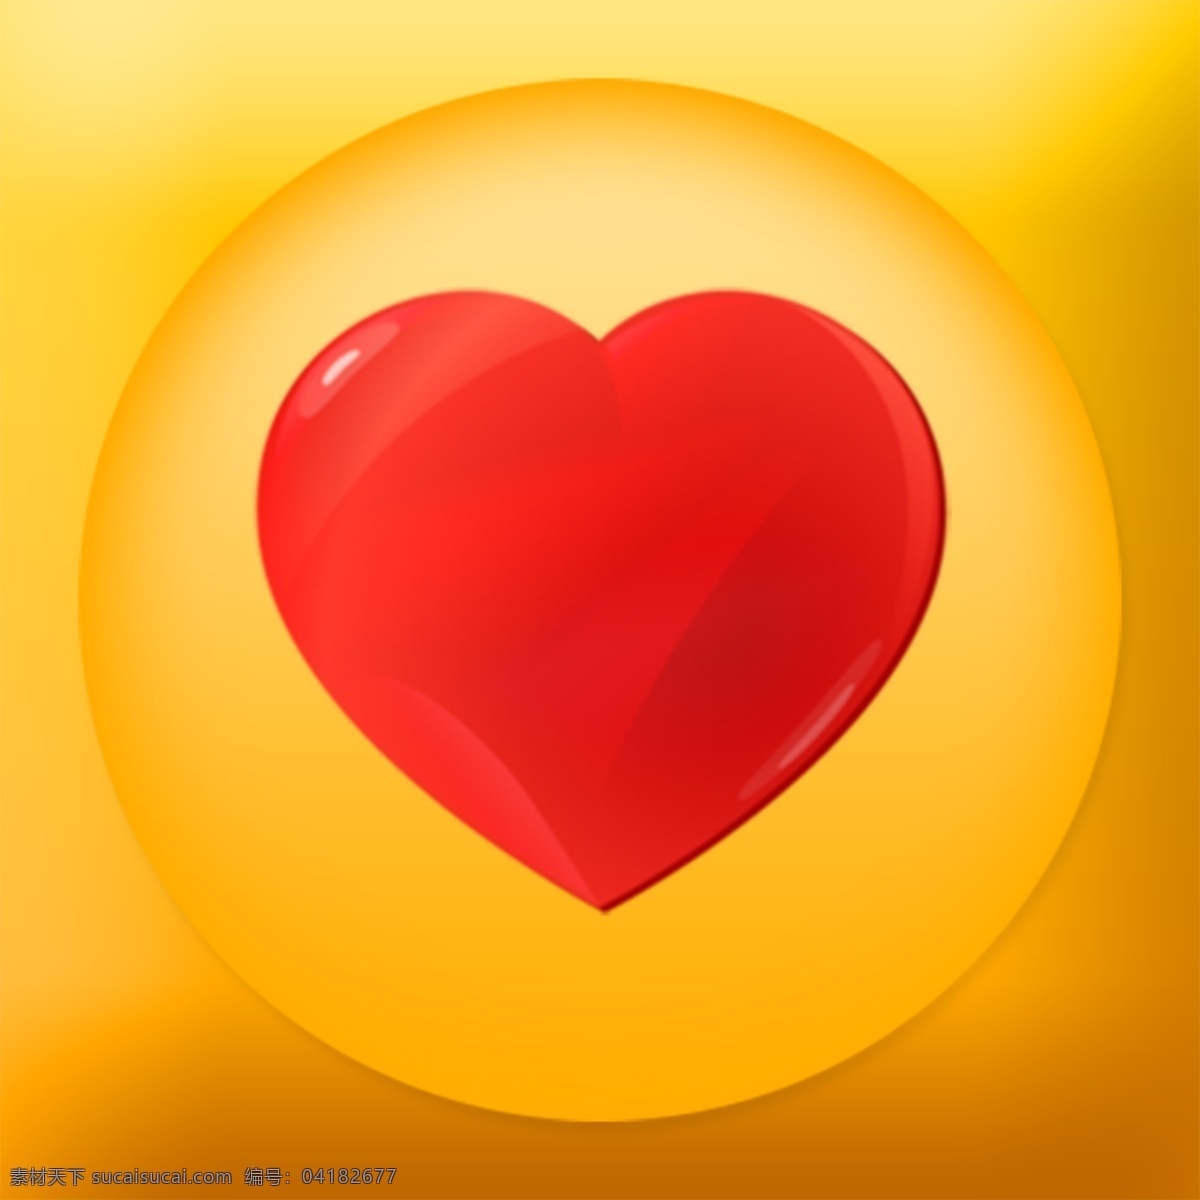 爱 秀 手机 app 图标 logo 原创 橙色 图 爱秀 爱心